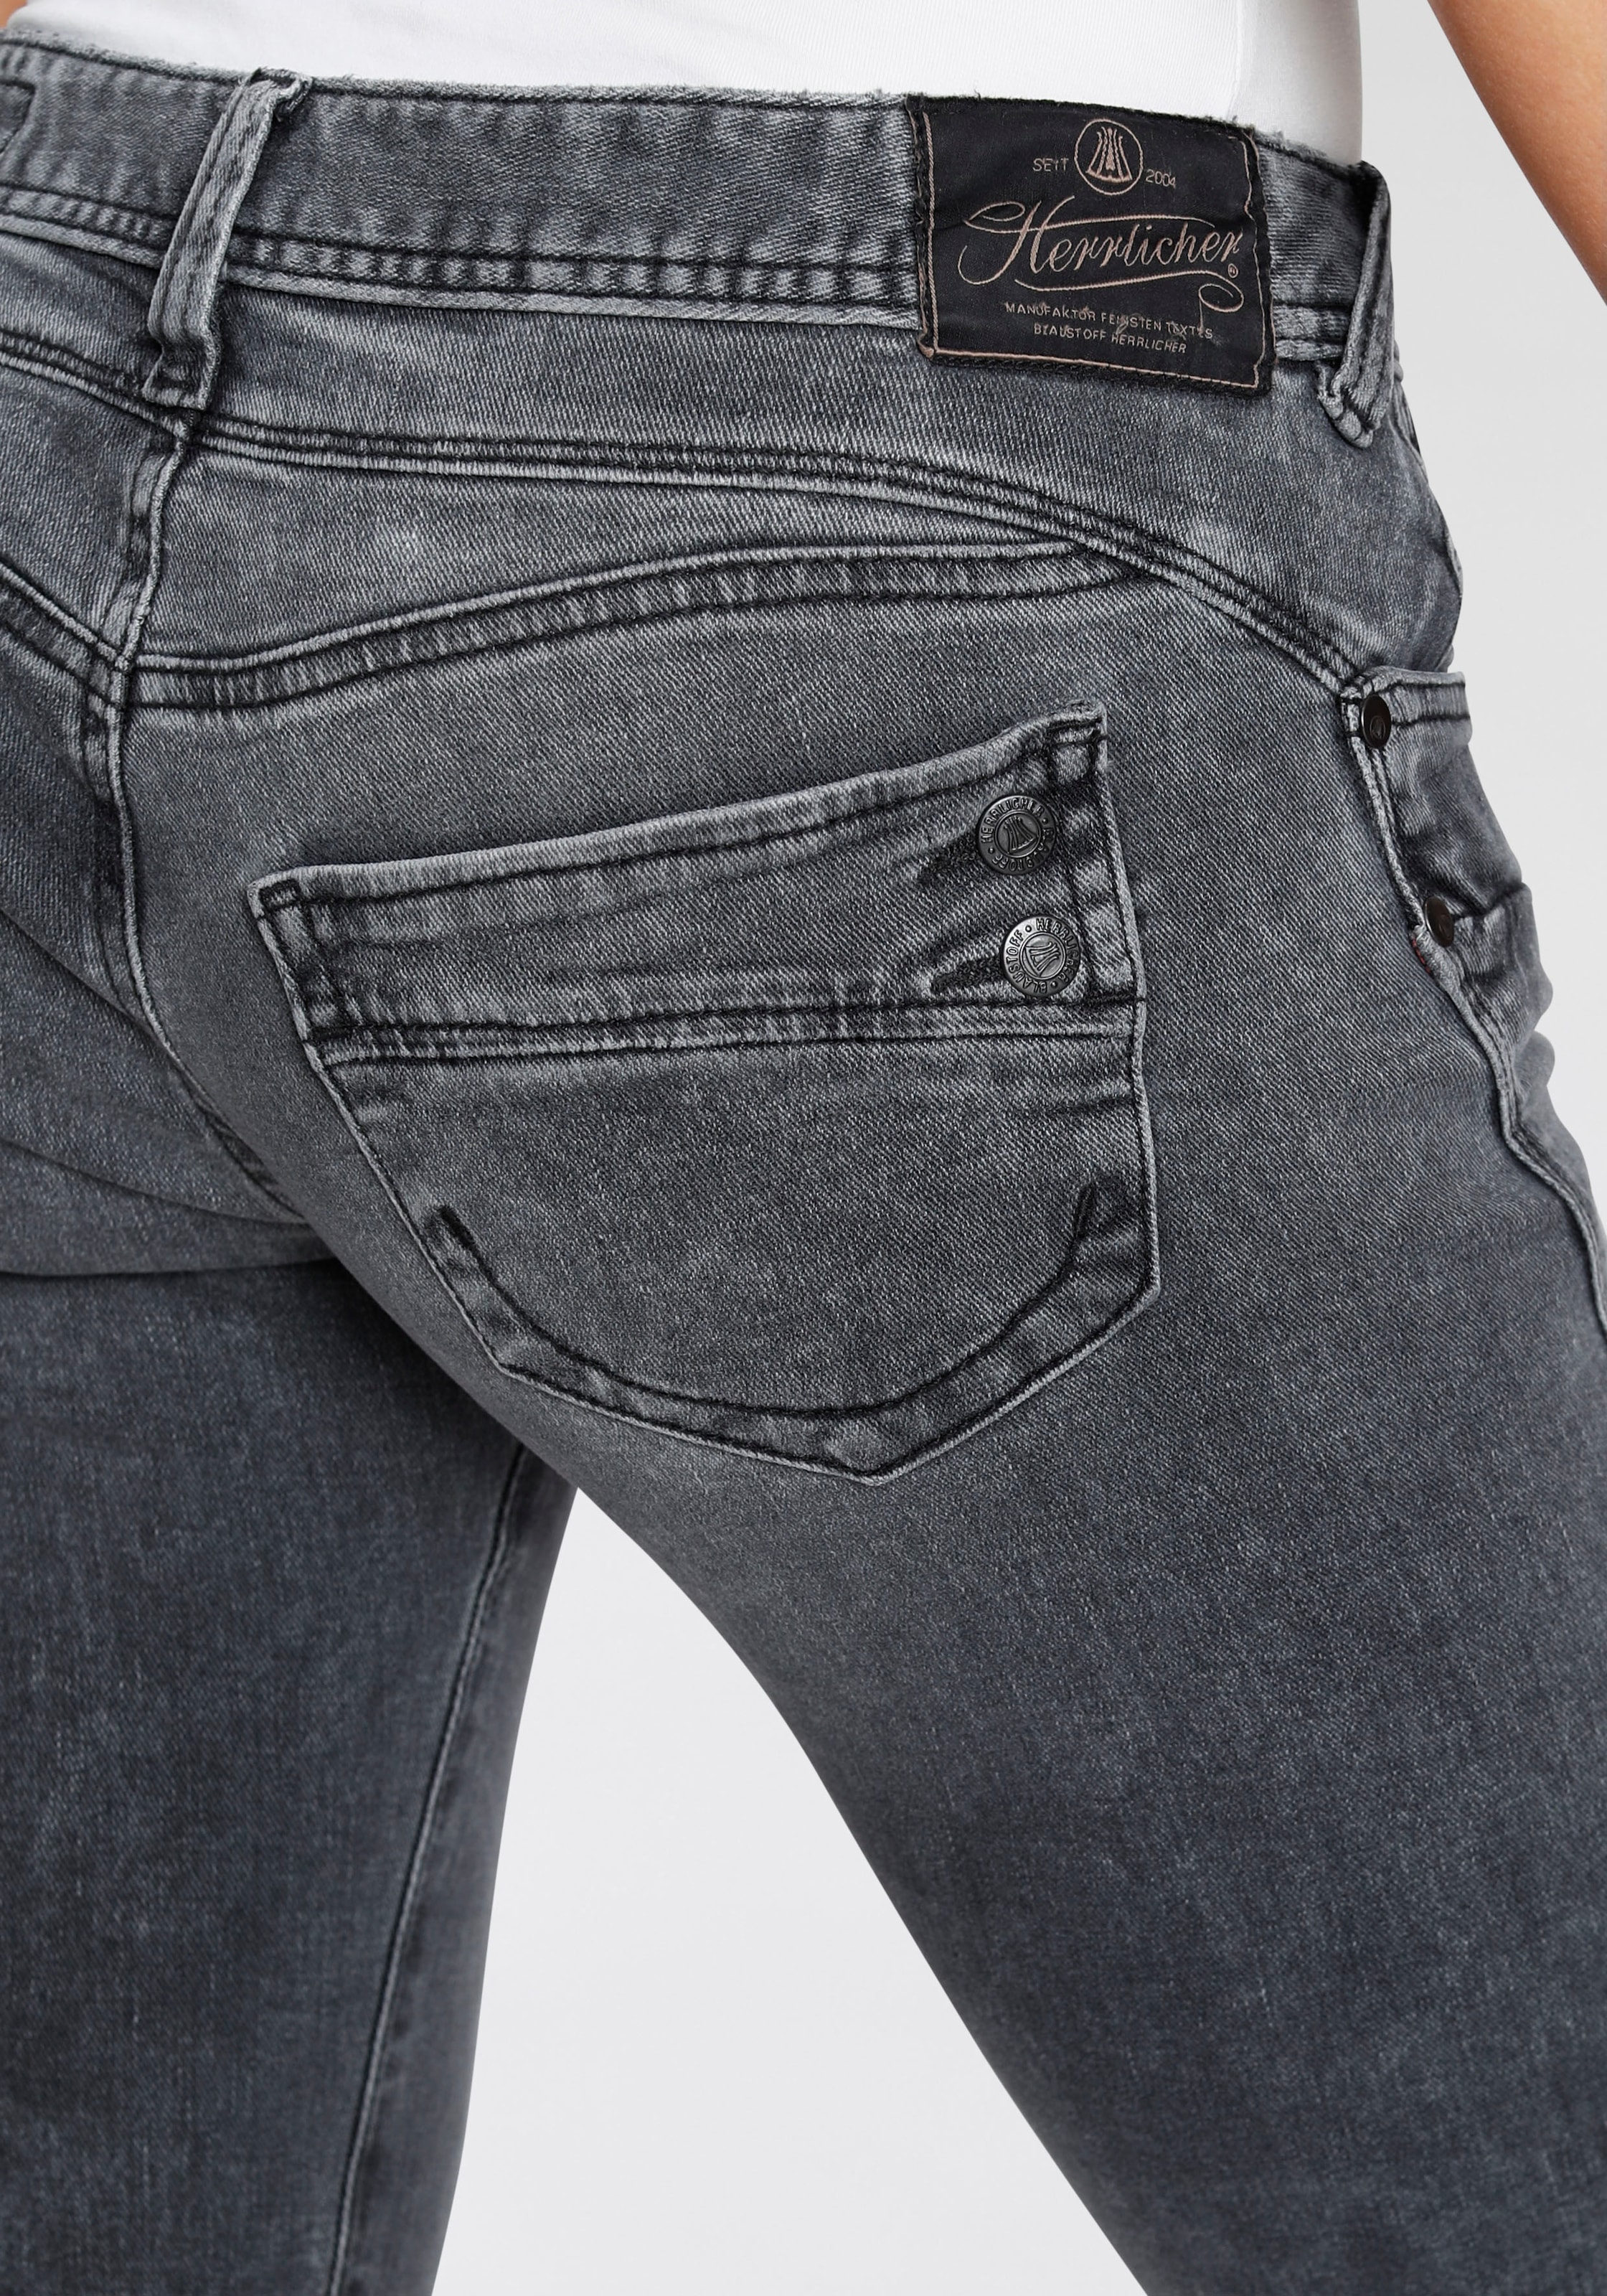 Kitotex kaufen »PIPER Technology ORGANIC«, dank Slim-fit-Jeans SLIM Herrlicher umweltfreundlich